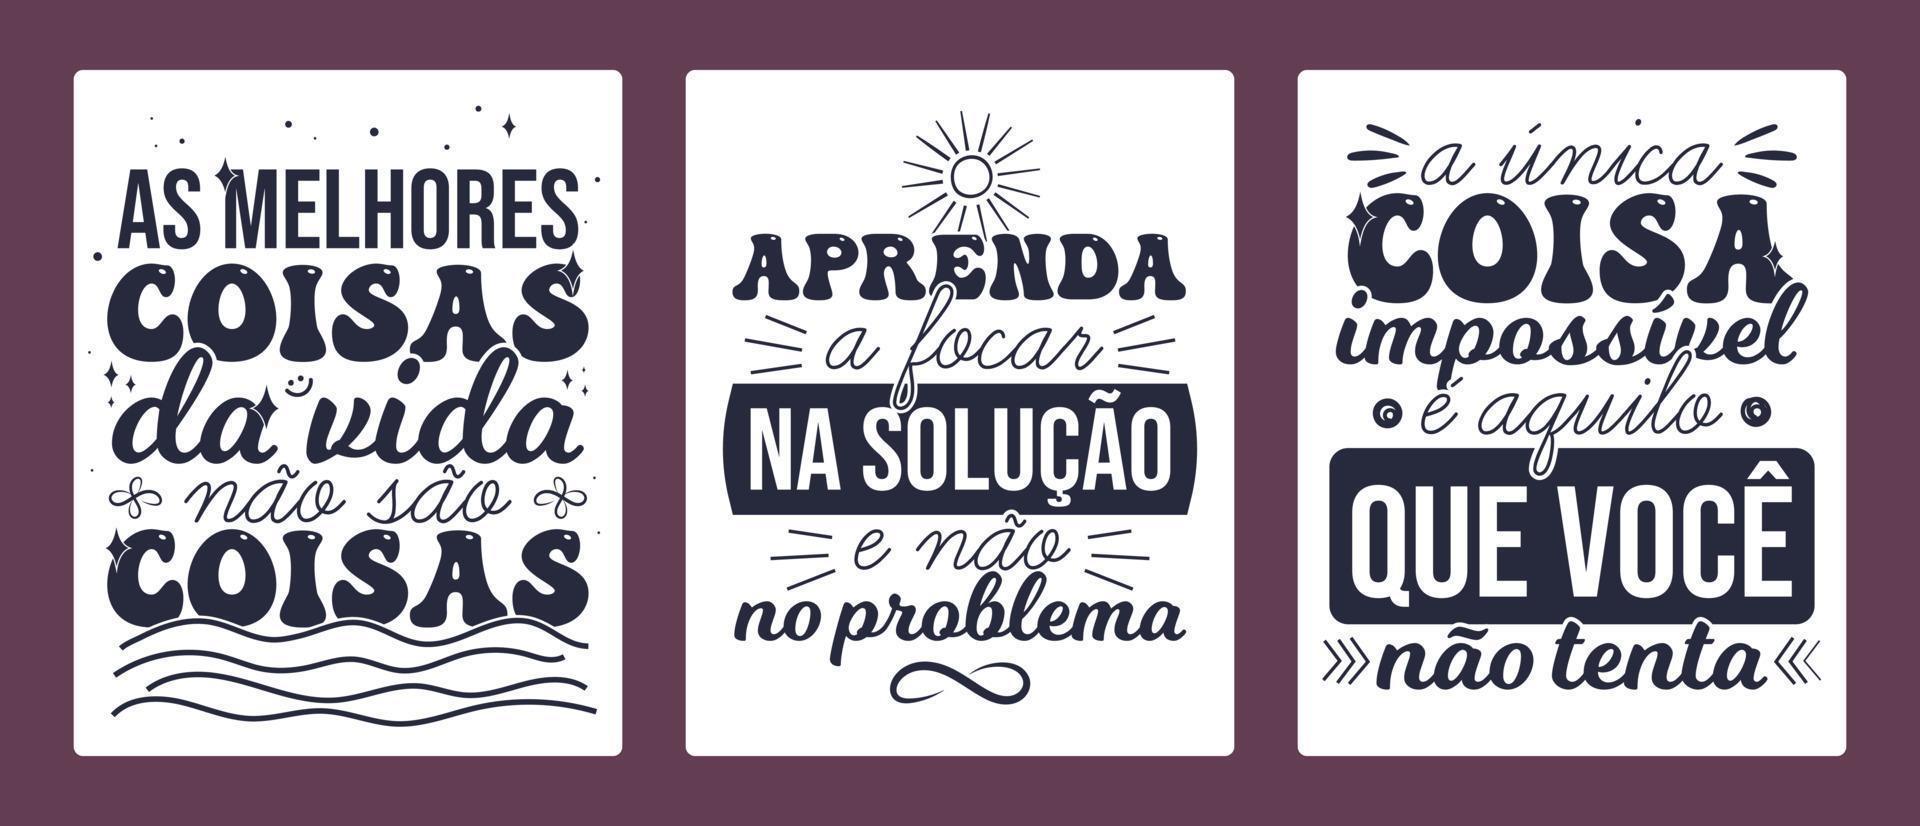 três cartaz português brasileiro. tradução - as melhores coisas da vida não são coisas. - aprenda a focar na solução, não no problema. - a única coisa impossível é o que você não tenta. vetor